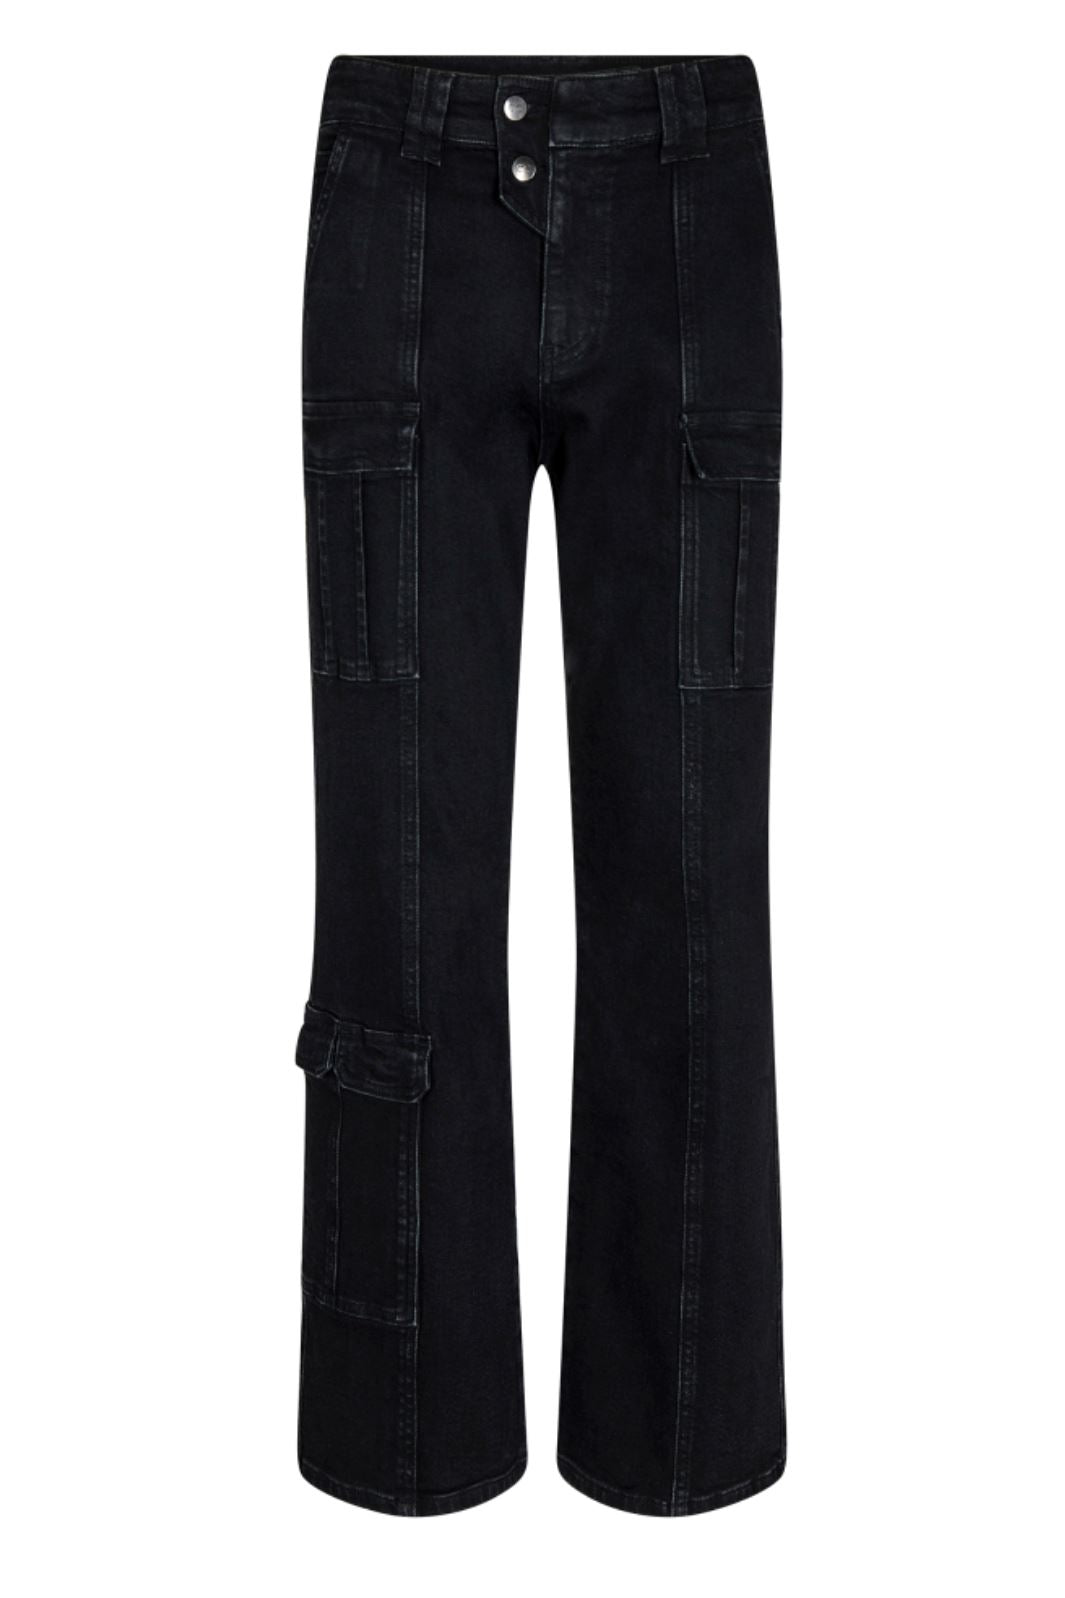 Co´couture - Jolenecc Flare Pocket Jeans - 96 Black Jeans 